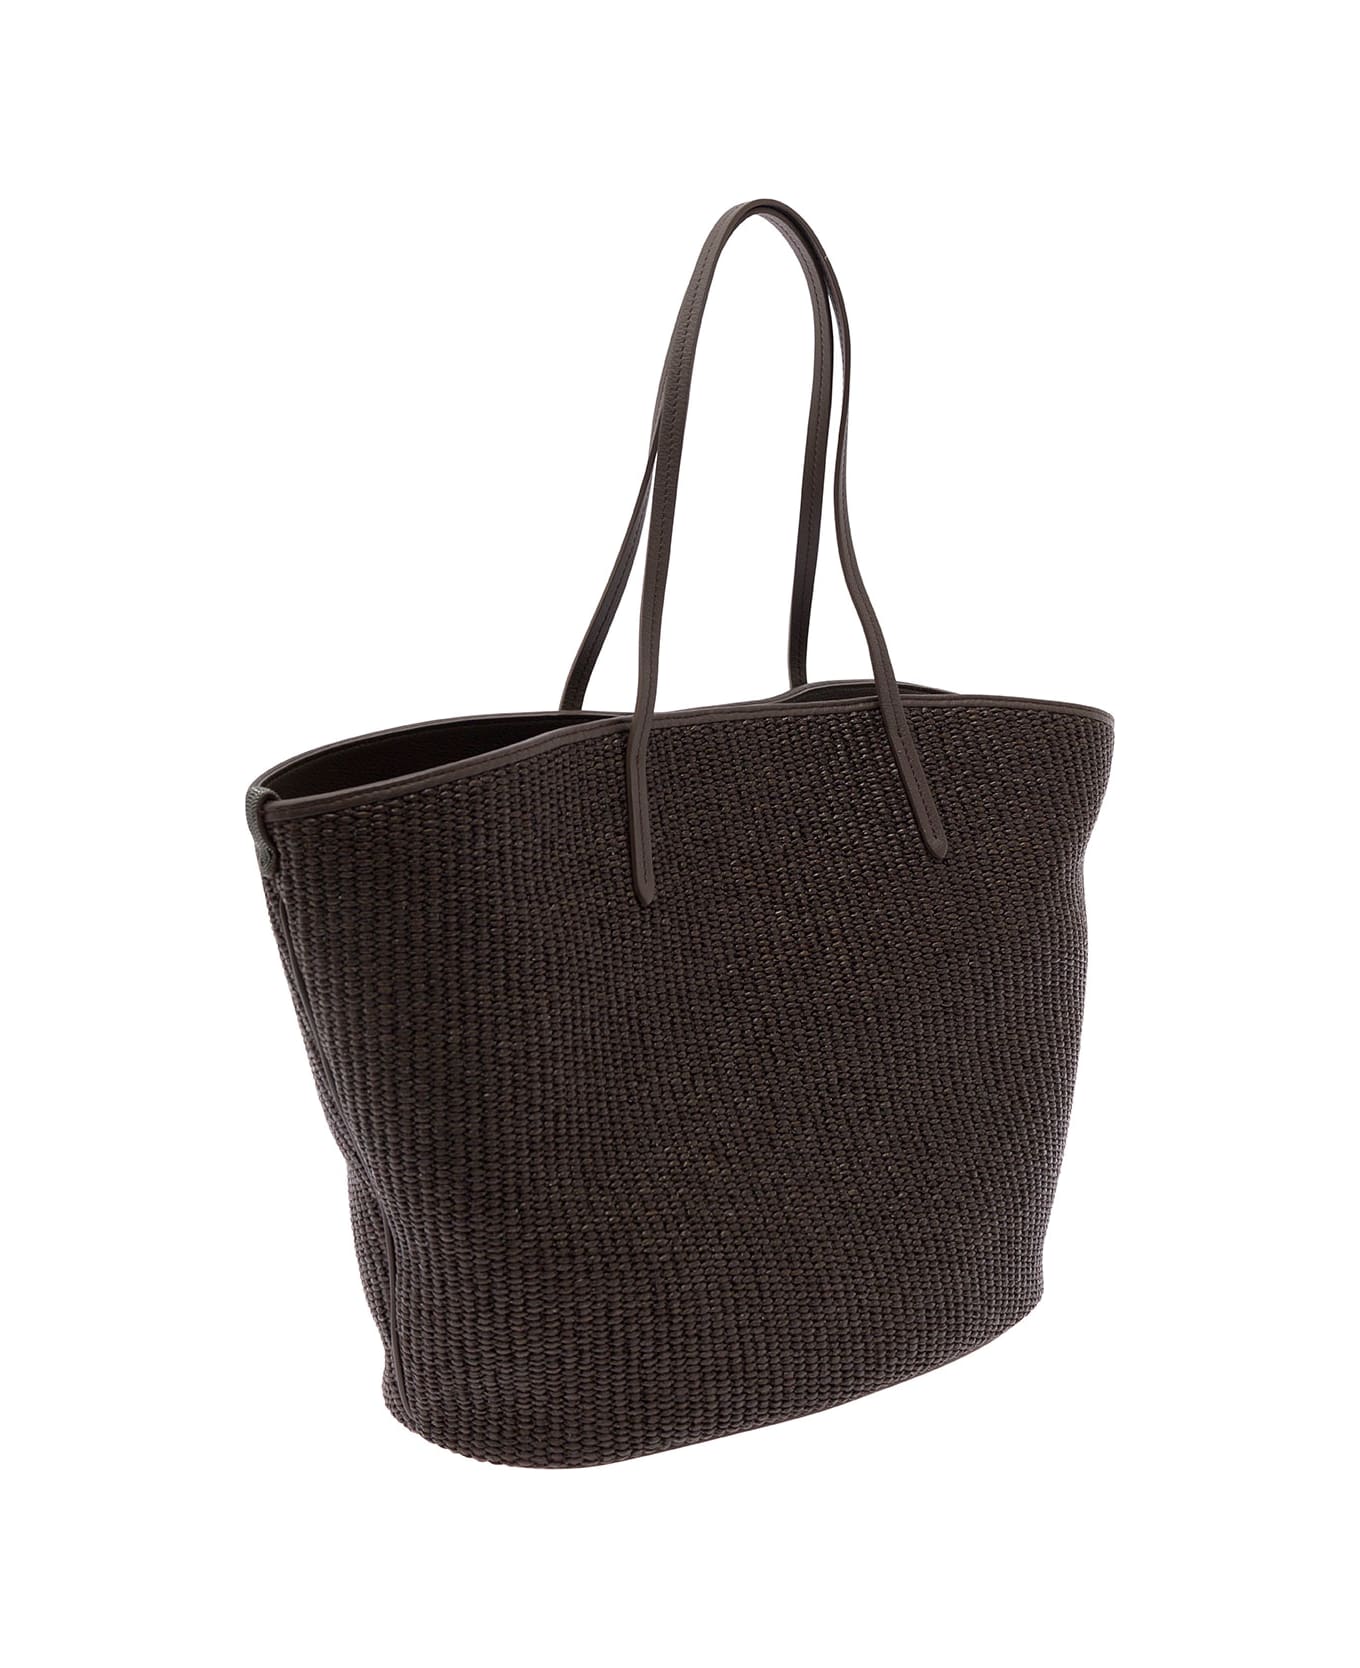 Brunello Cucinelli Brown Tote Bag With Monile Embellishment In Cotton Rafia Woman - Brown